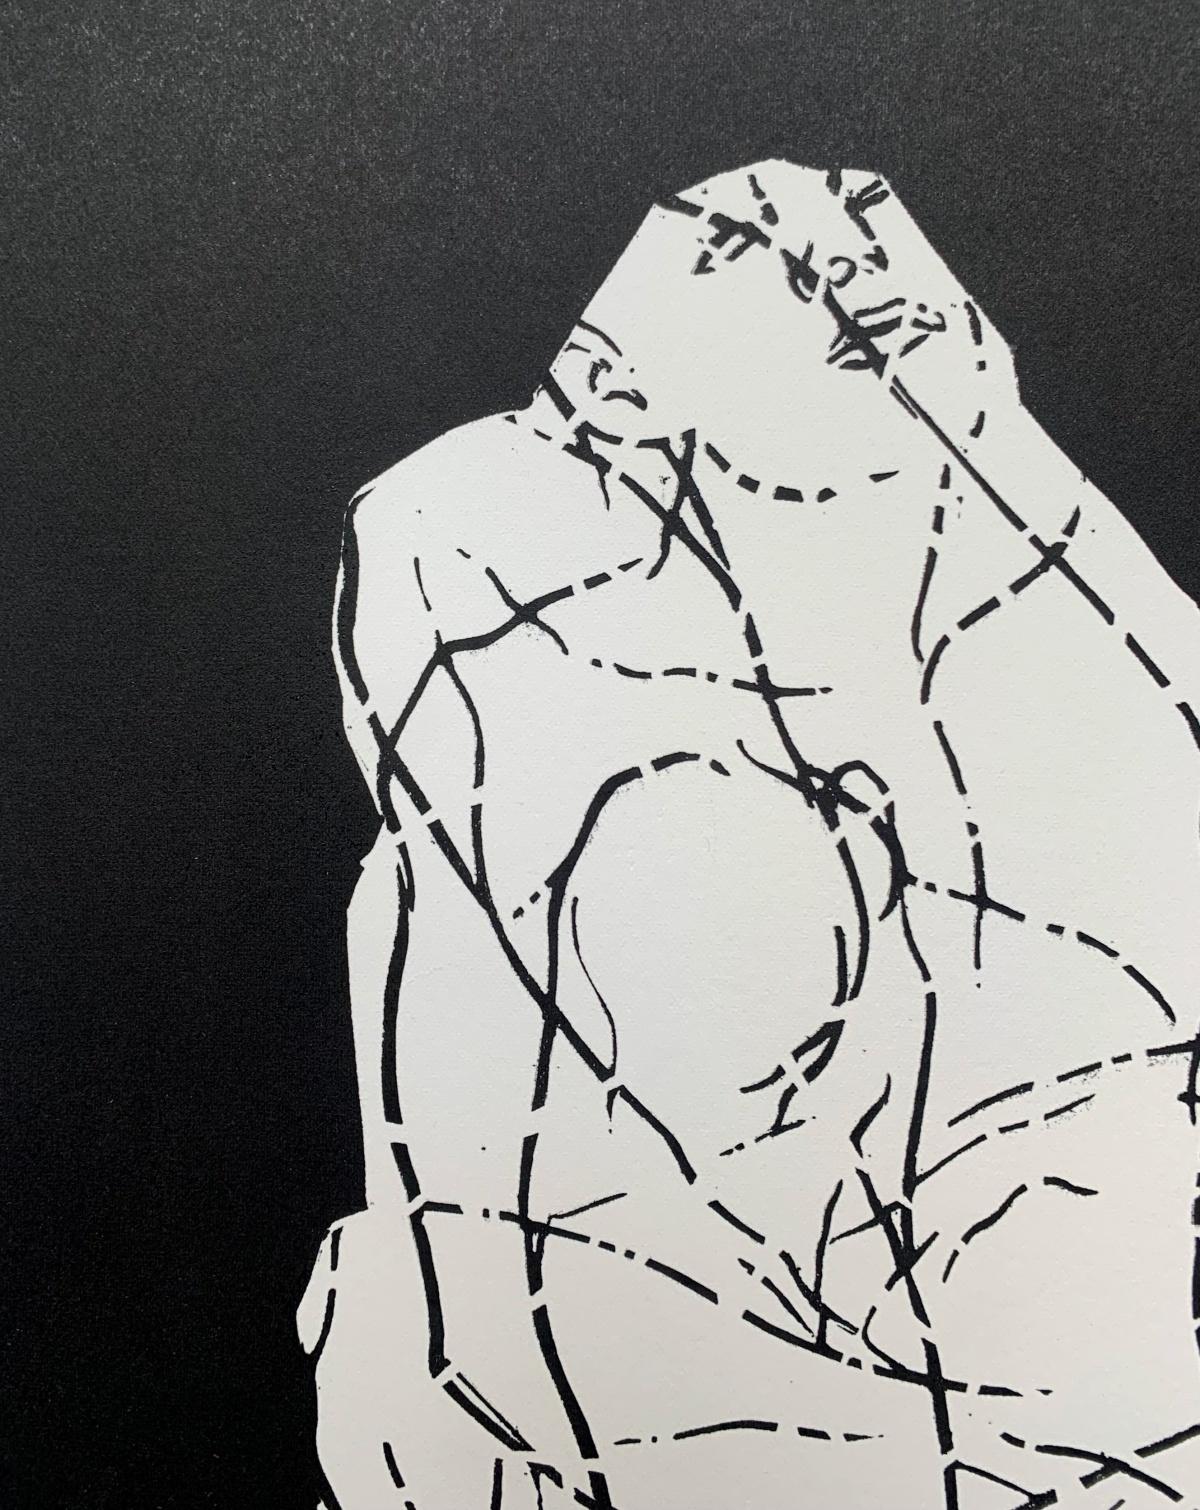 Schwarzer und weißer zeitgenössischer figurativer Linolschnitt der polnischen Künstlerin Luiza Kasprzyk. Das Kunstwerk stammt aus einer limitierten Auflage von 50 Stück. Der Druck zeigt Körper, die sich gegenseitig durchdringen. 

LUIZA